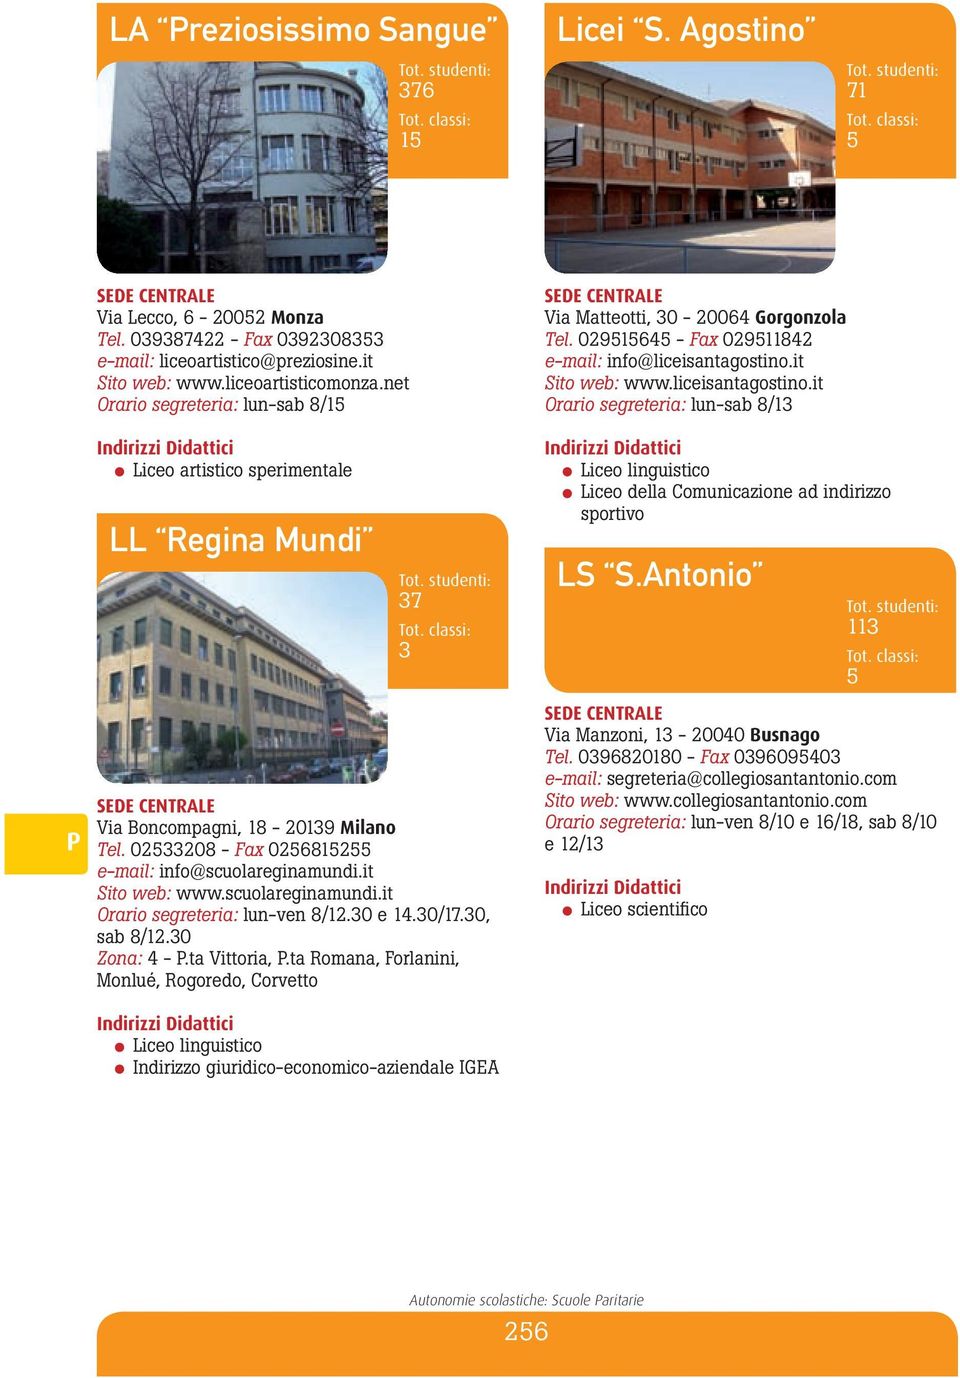 liceisantagostino.it Orario segreteria: lun-sab 8/13 Liceo della Comunicazione ad indirizzo sportivo LS S.Antonio 113 Via Boncompagni, 18-20139 Tel.